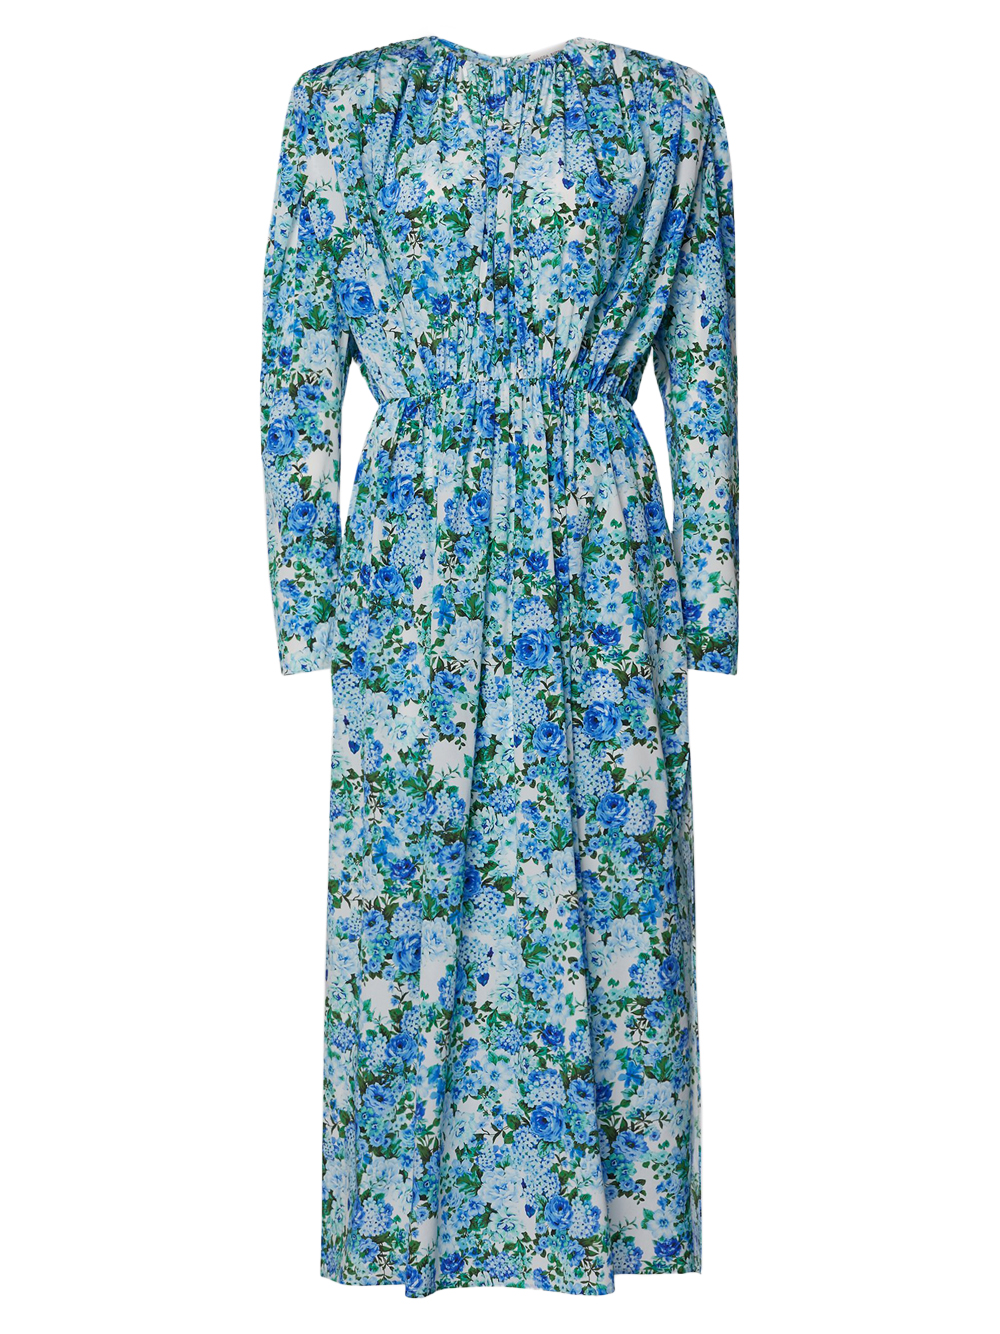 Kleid mit blauem Blumenprint